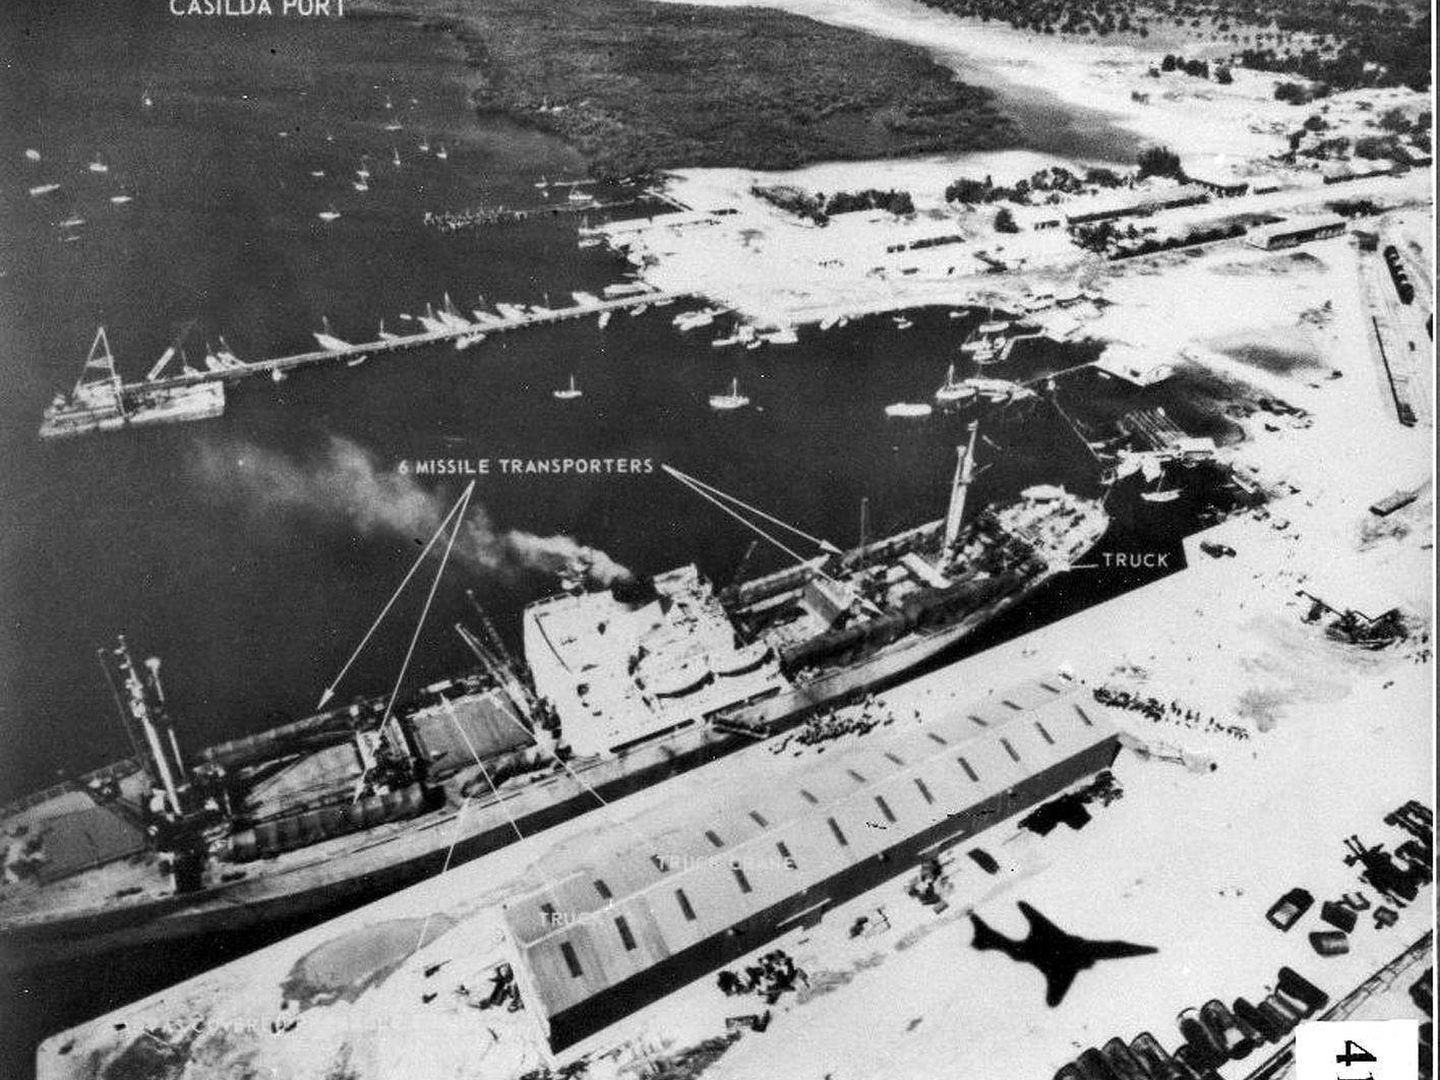 Fotografía facilitada por el Departamento de Defensa de EEUU que muestra el avión de reconocimiento RF-101 Voodoo (cuya sombra se proyecta en el lado derecho de la foto) en el momento de divisar embarcaciones rusas que transportaban misiles en el puerto de Casilda, Cuba, el 6 de noviembre de 1962.